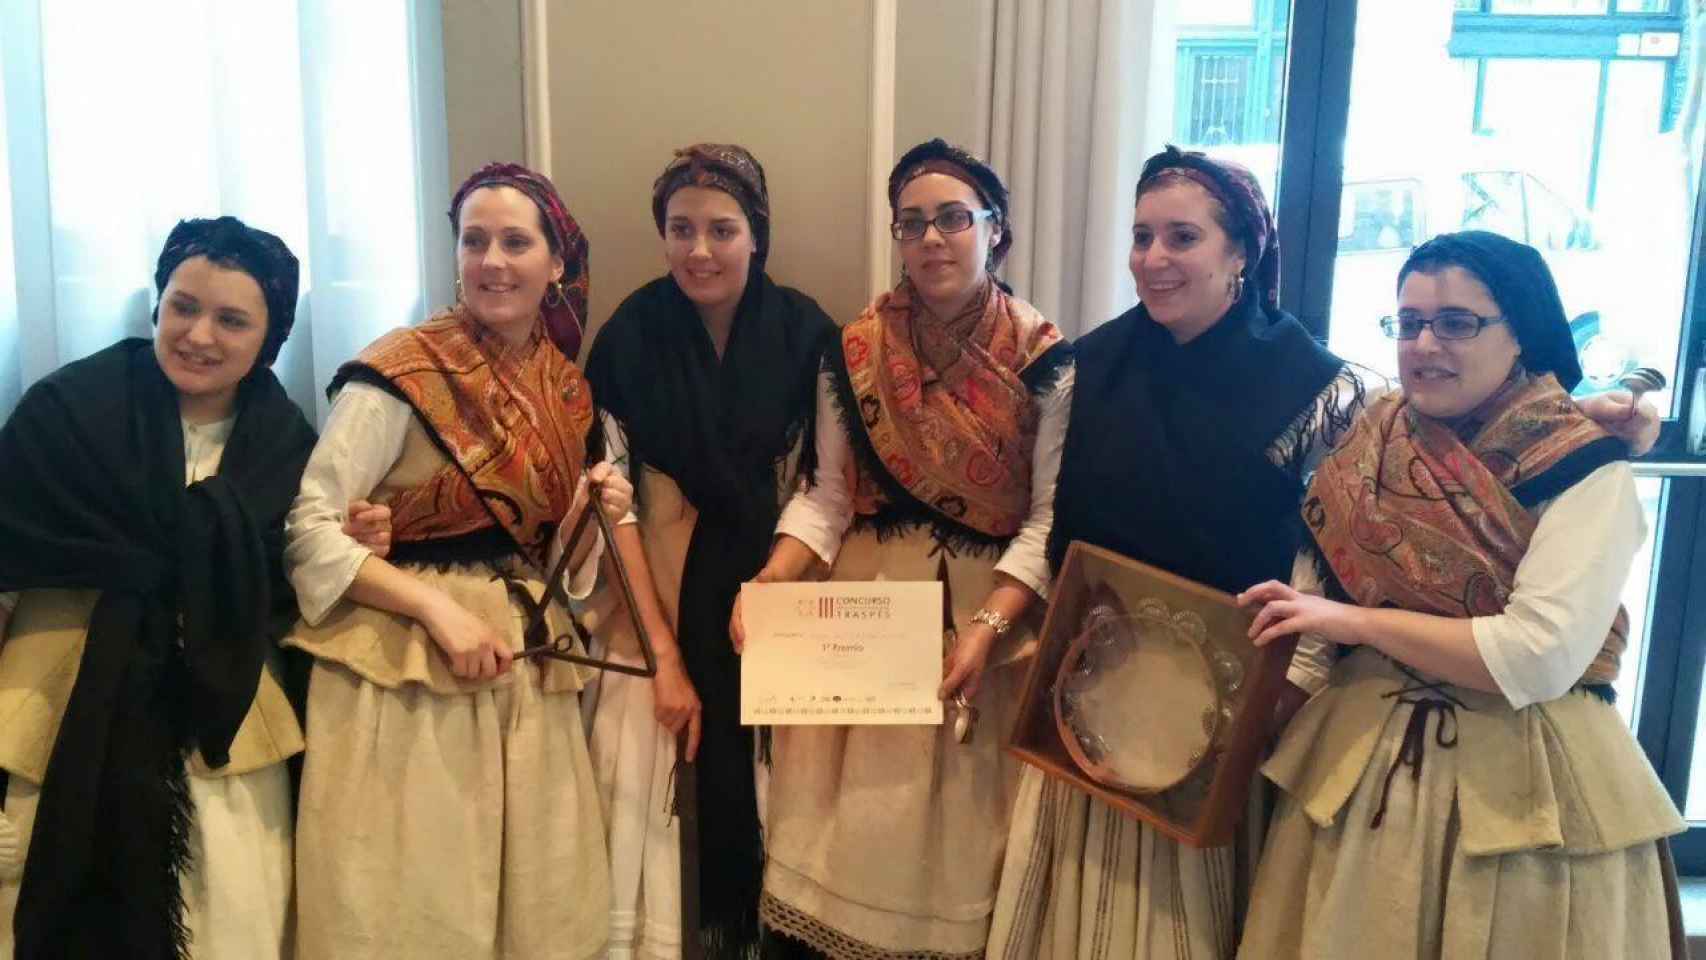 Las hermanas Maneiro, en los extremos, con el grupo de 'cantareiras' de A Mámoa en 2015.